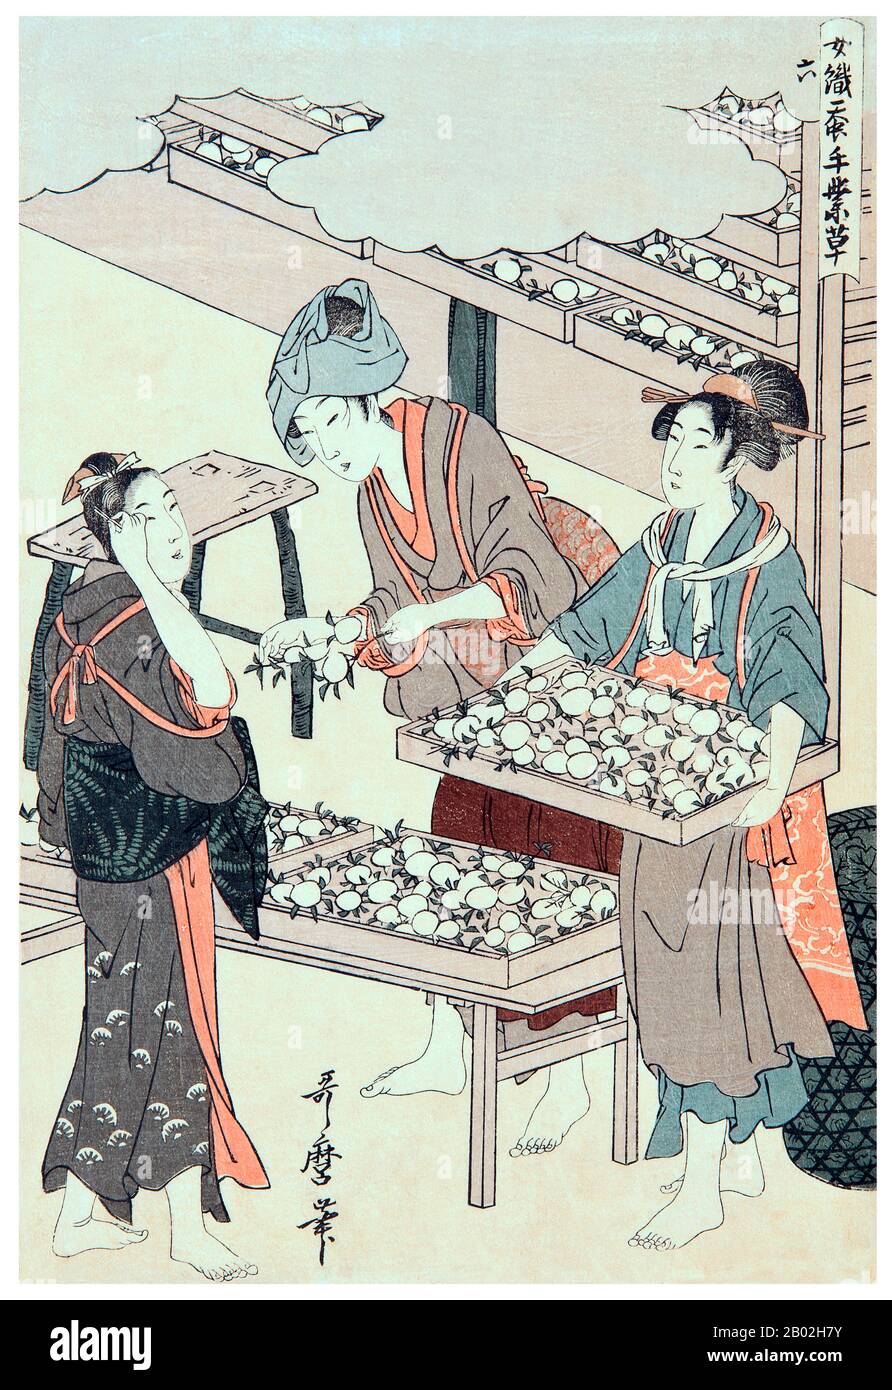 6. « The cococon stage », représentant une fille qui organise les cocons sur un plateau, une autre tient un plateau complet et une autre montre la scène. Kitagawa Utamaro (env. 1753 - 31 octobre 1806) était un peintre et graveur japonais, considéré comme l'un des plus grands artistes de gravures de bois (ukiyo-e). Il est surtout connu pour ses études magistralement composées de femmes, connues sous le nom de bijinga. Il a également produit des études sur la nature, notamment des livres illustrés d'insectes. Banque D'Images